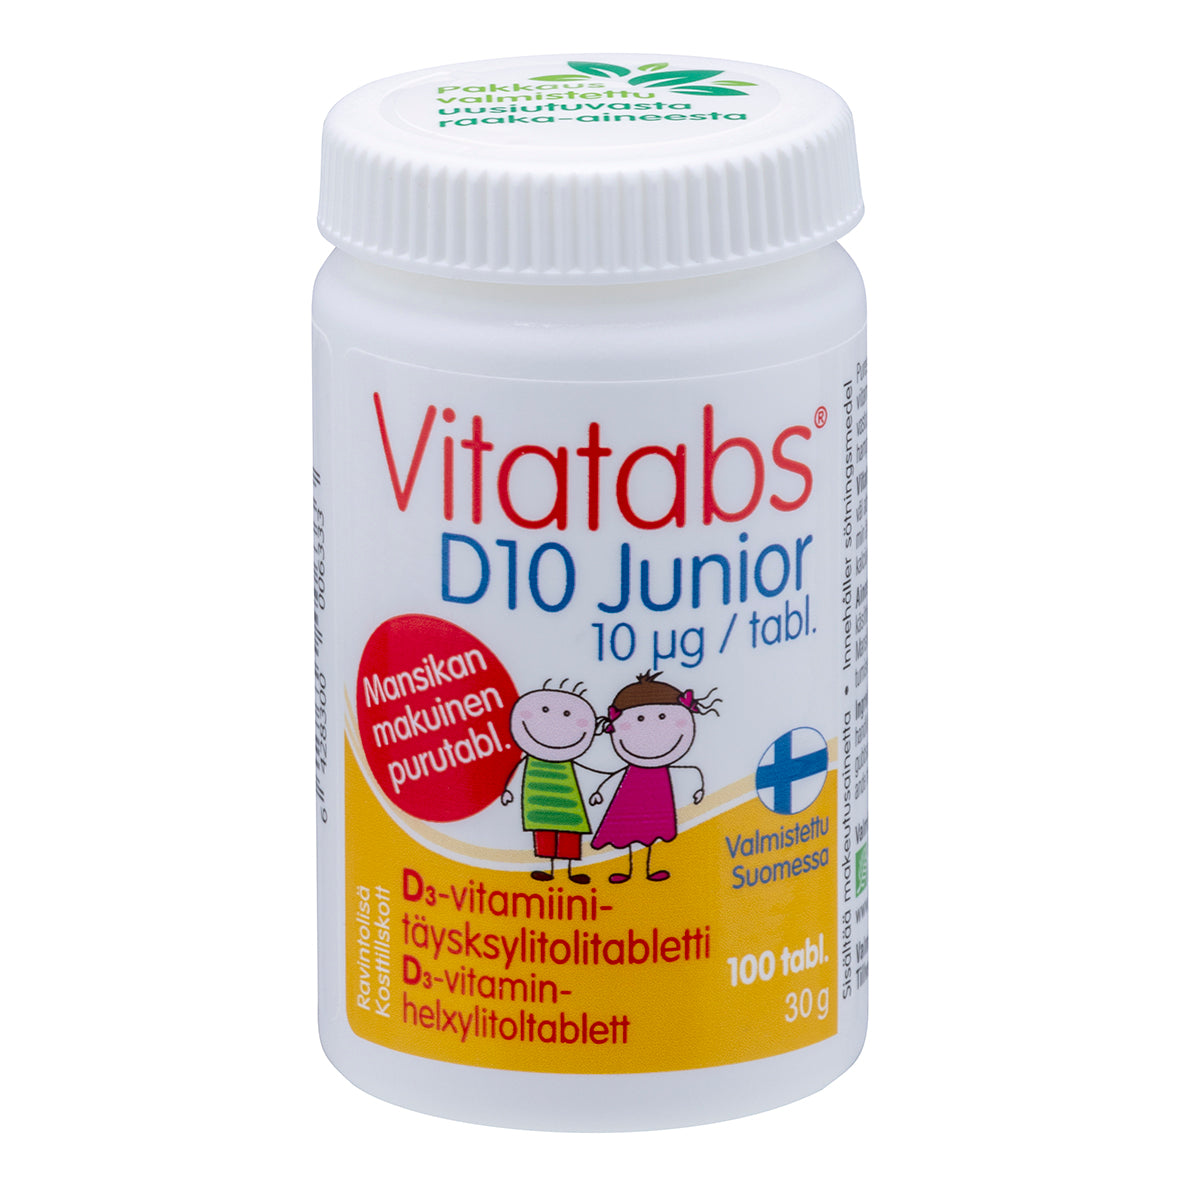 Vitatabs D10 Junior - D3-vitamiini-täysksylitolitabletti 100 tabl.